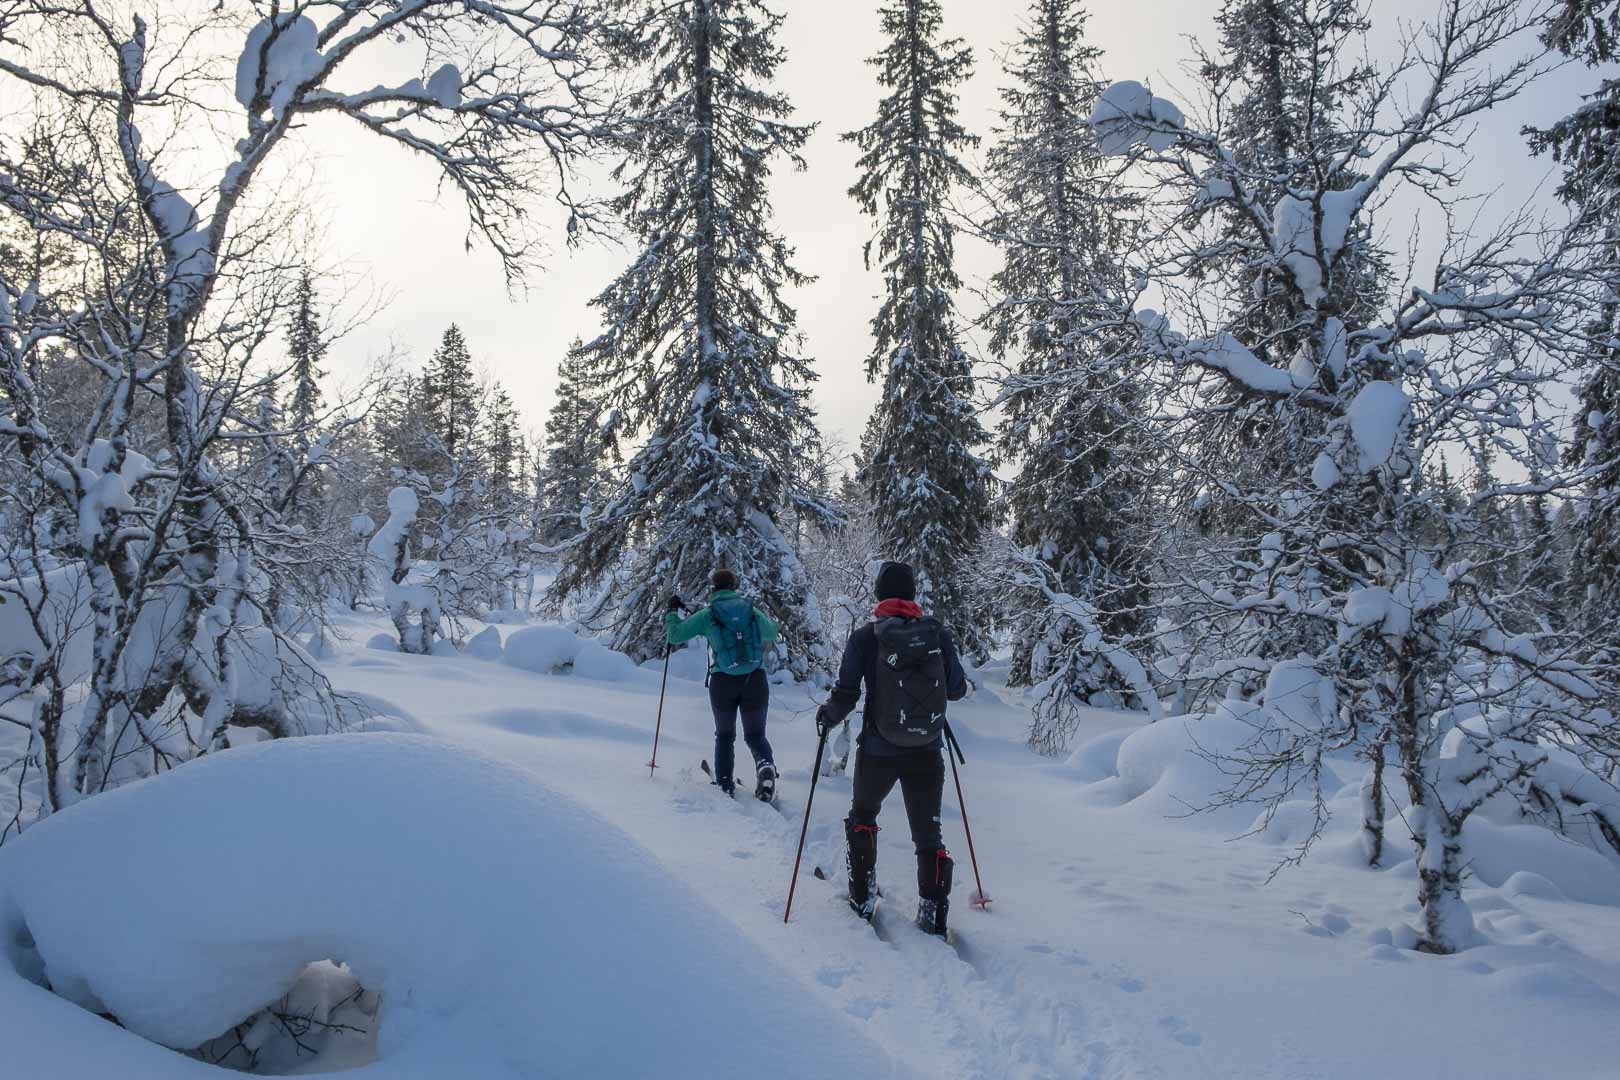 Wintertraum Lappland
Erlebniswoche Finnland
Backcountry Ski
Langlaufen
Schneeschuhwandern
Schneeschuh
Hundeschlitten
Husky
Fatbike